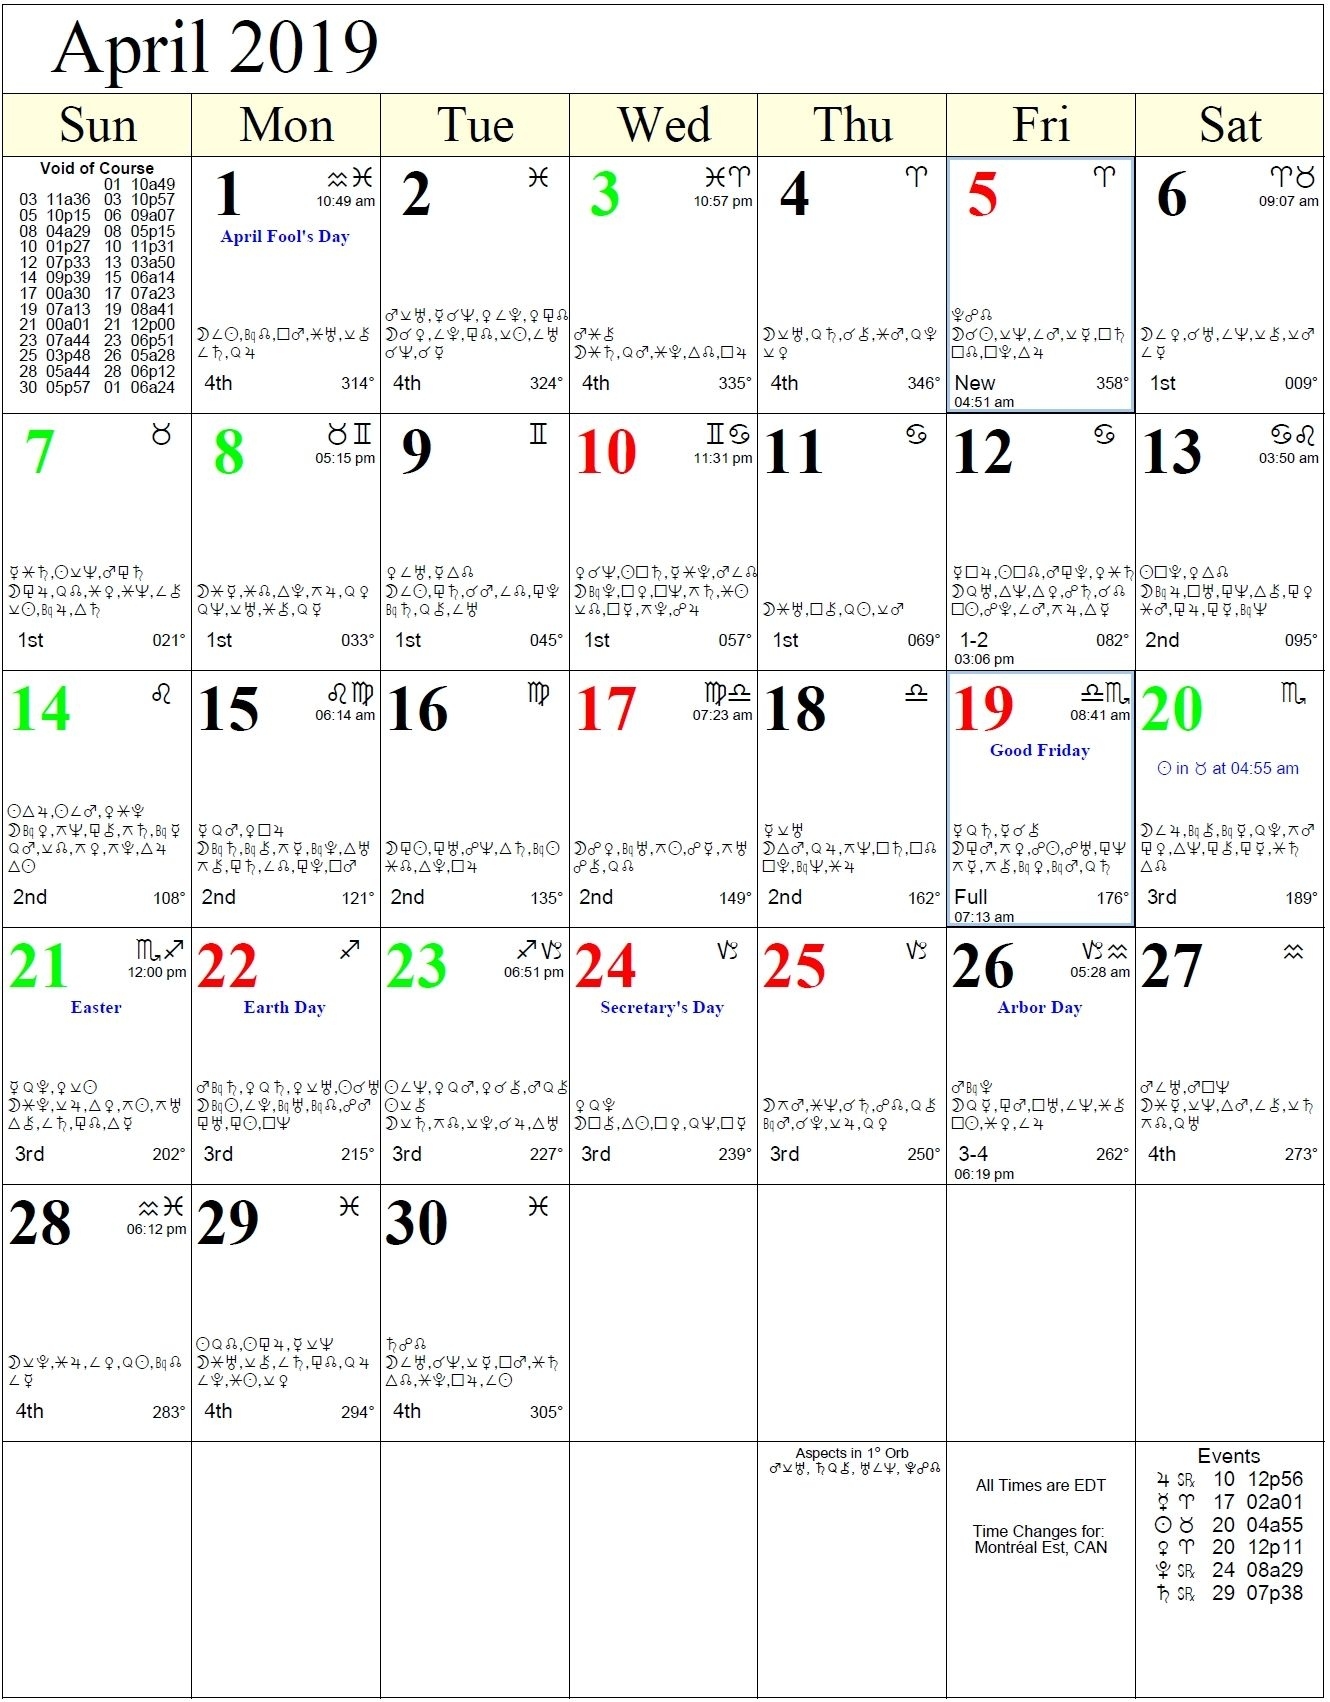 Lunar Calendar With Zodiac In 2020 | Astrology Calendar Lunar Calendar With Zodiac Signs